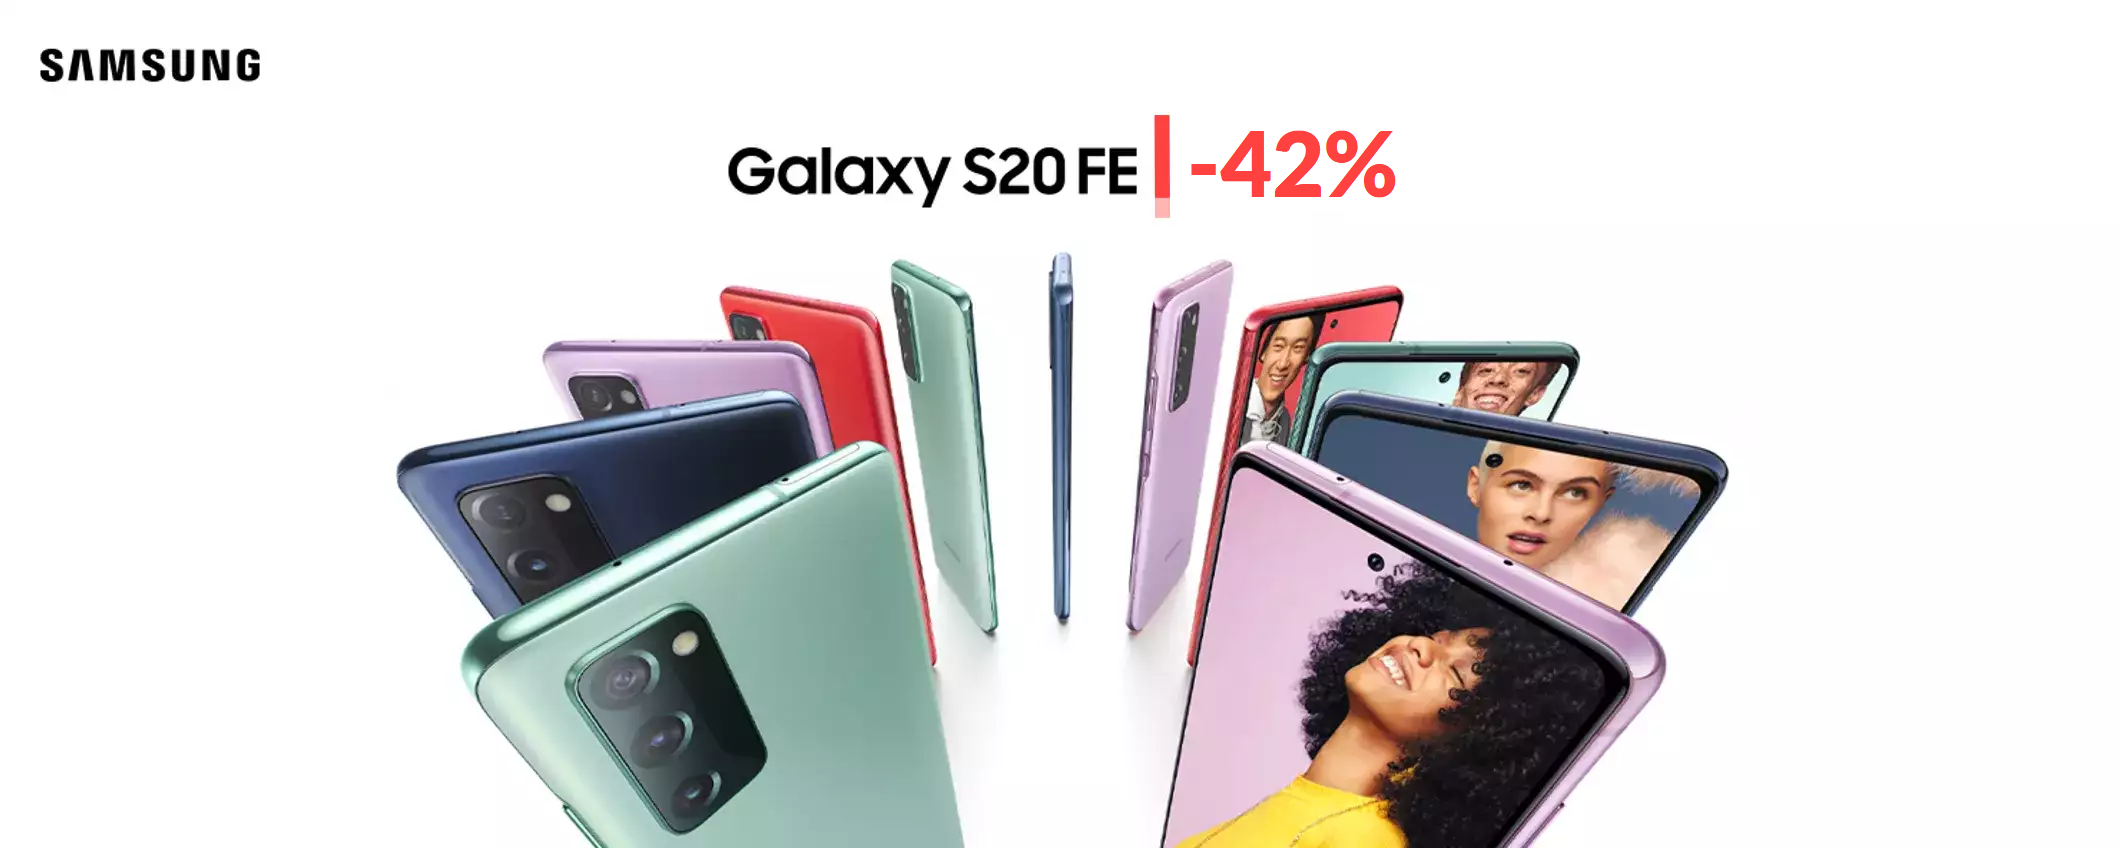 Samsung Galaxy S20 FE 5G: c'è un TAGLIO di prezzo imbattibile